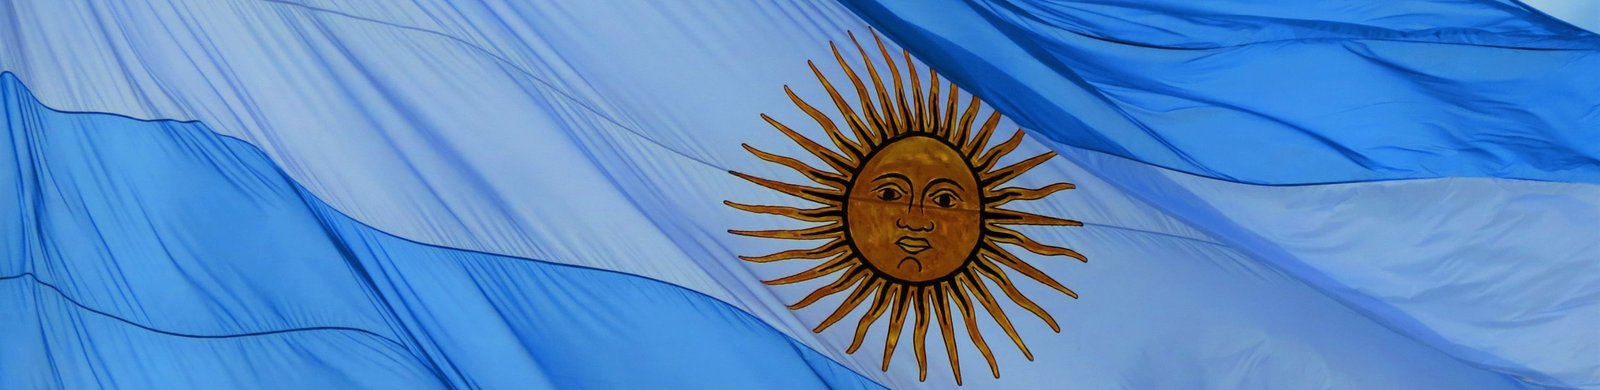 Día de la Bandera Argentina - Página oficial de la Facultad de Ciencias  Exactas, Físicas y Naturales de la U.N.C